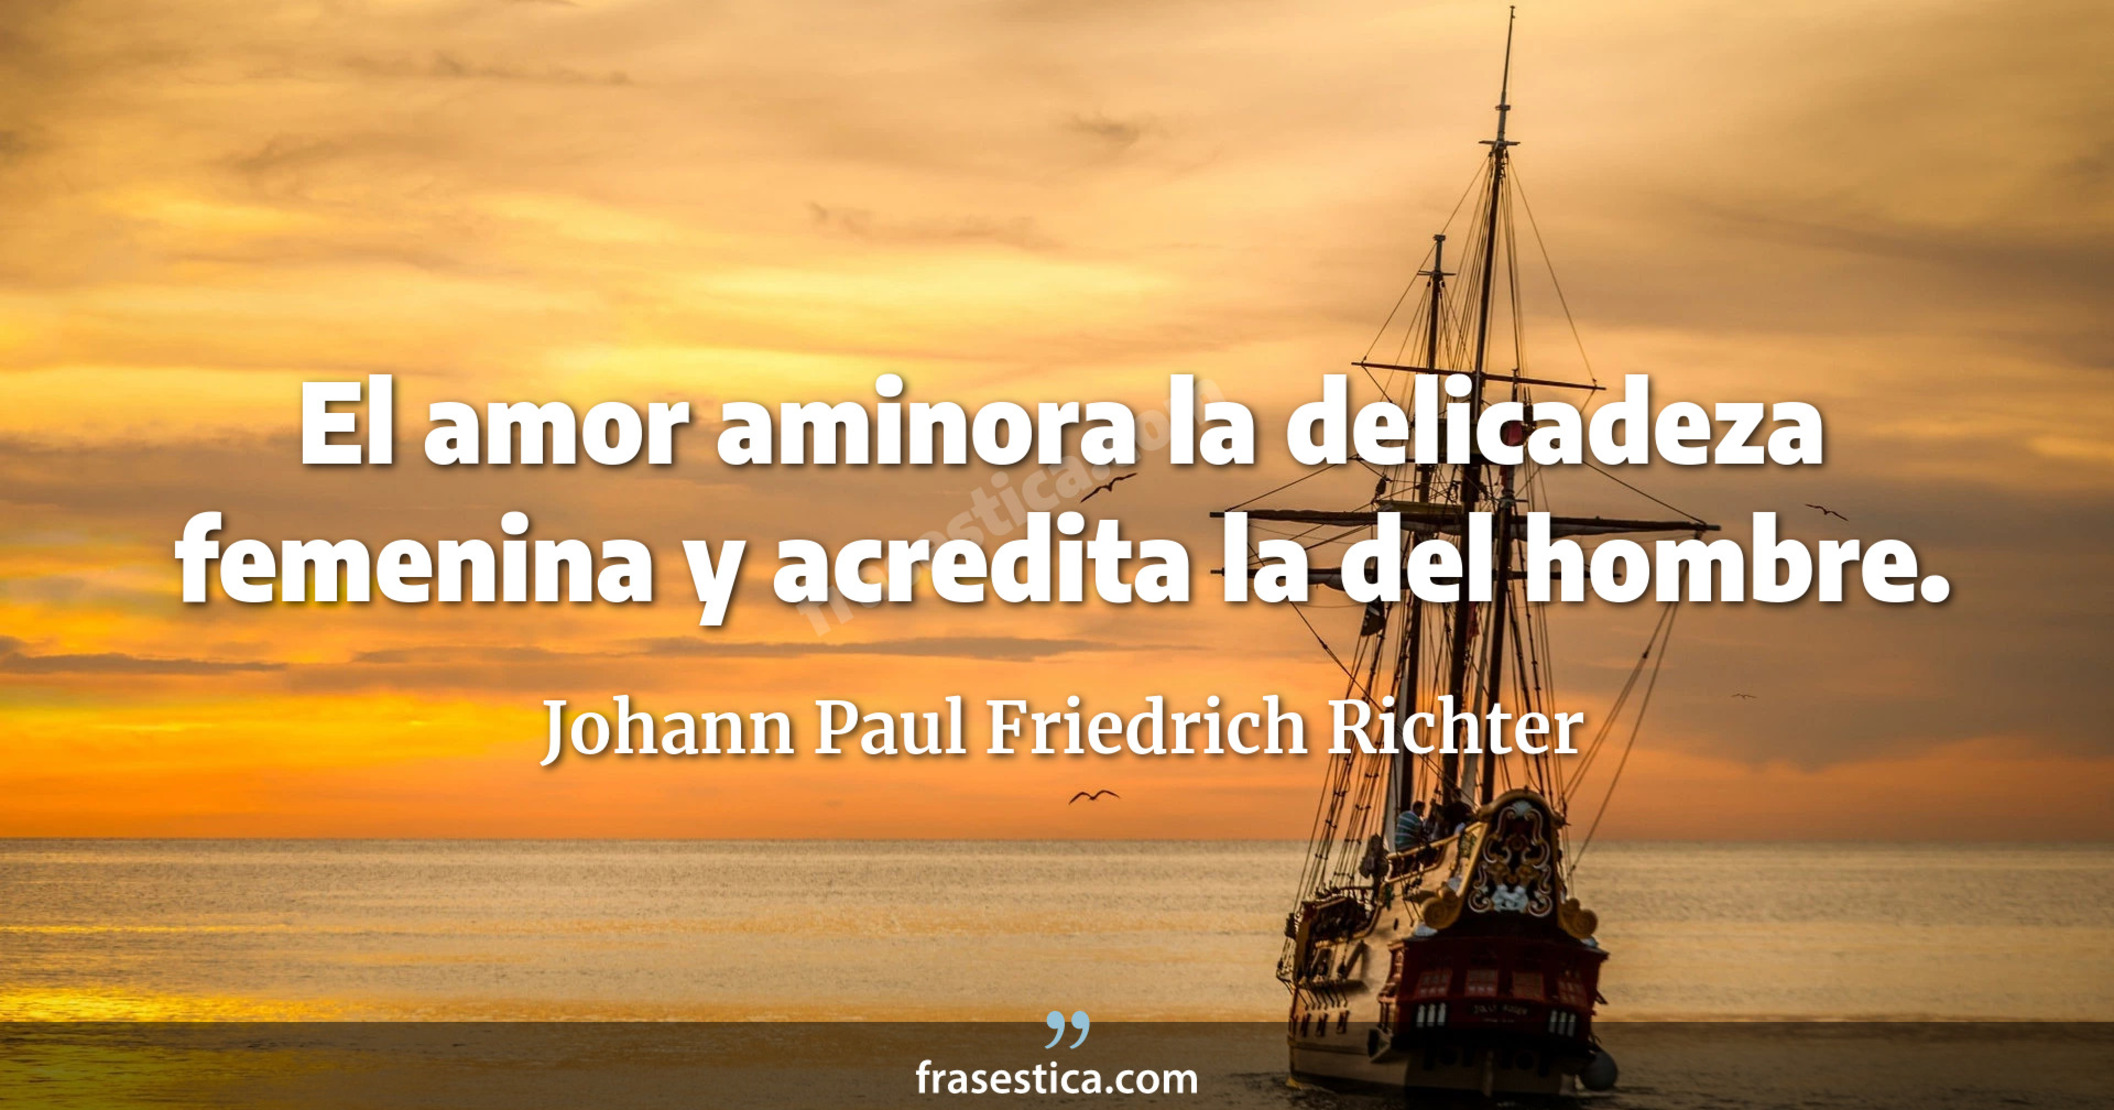 El amor aminora la delicadeza femenina y acredita la del hombre. - Johann Paul Friedrich Richter